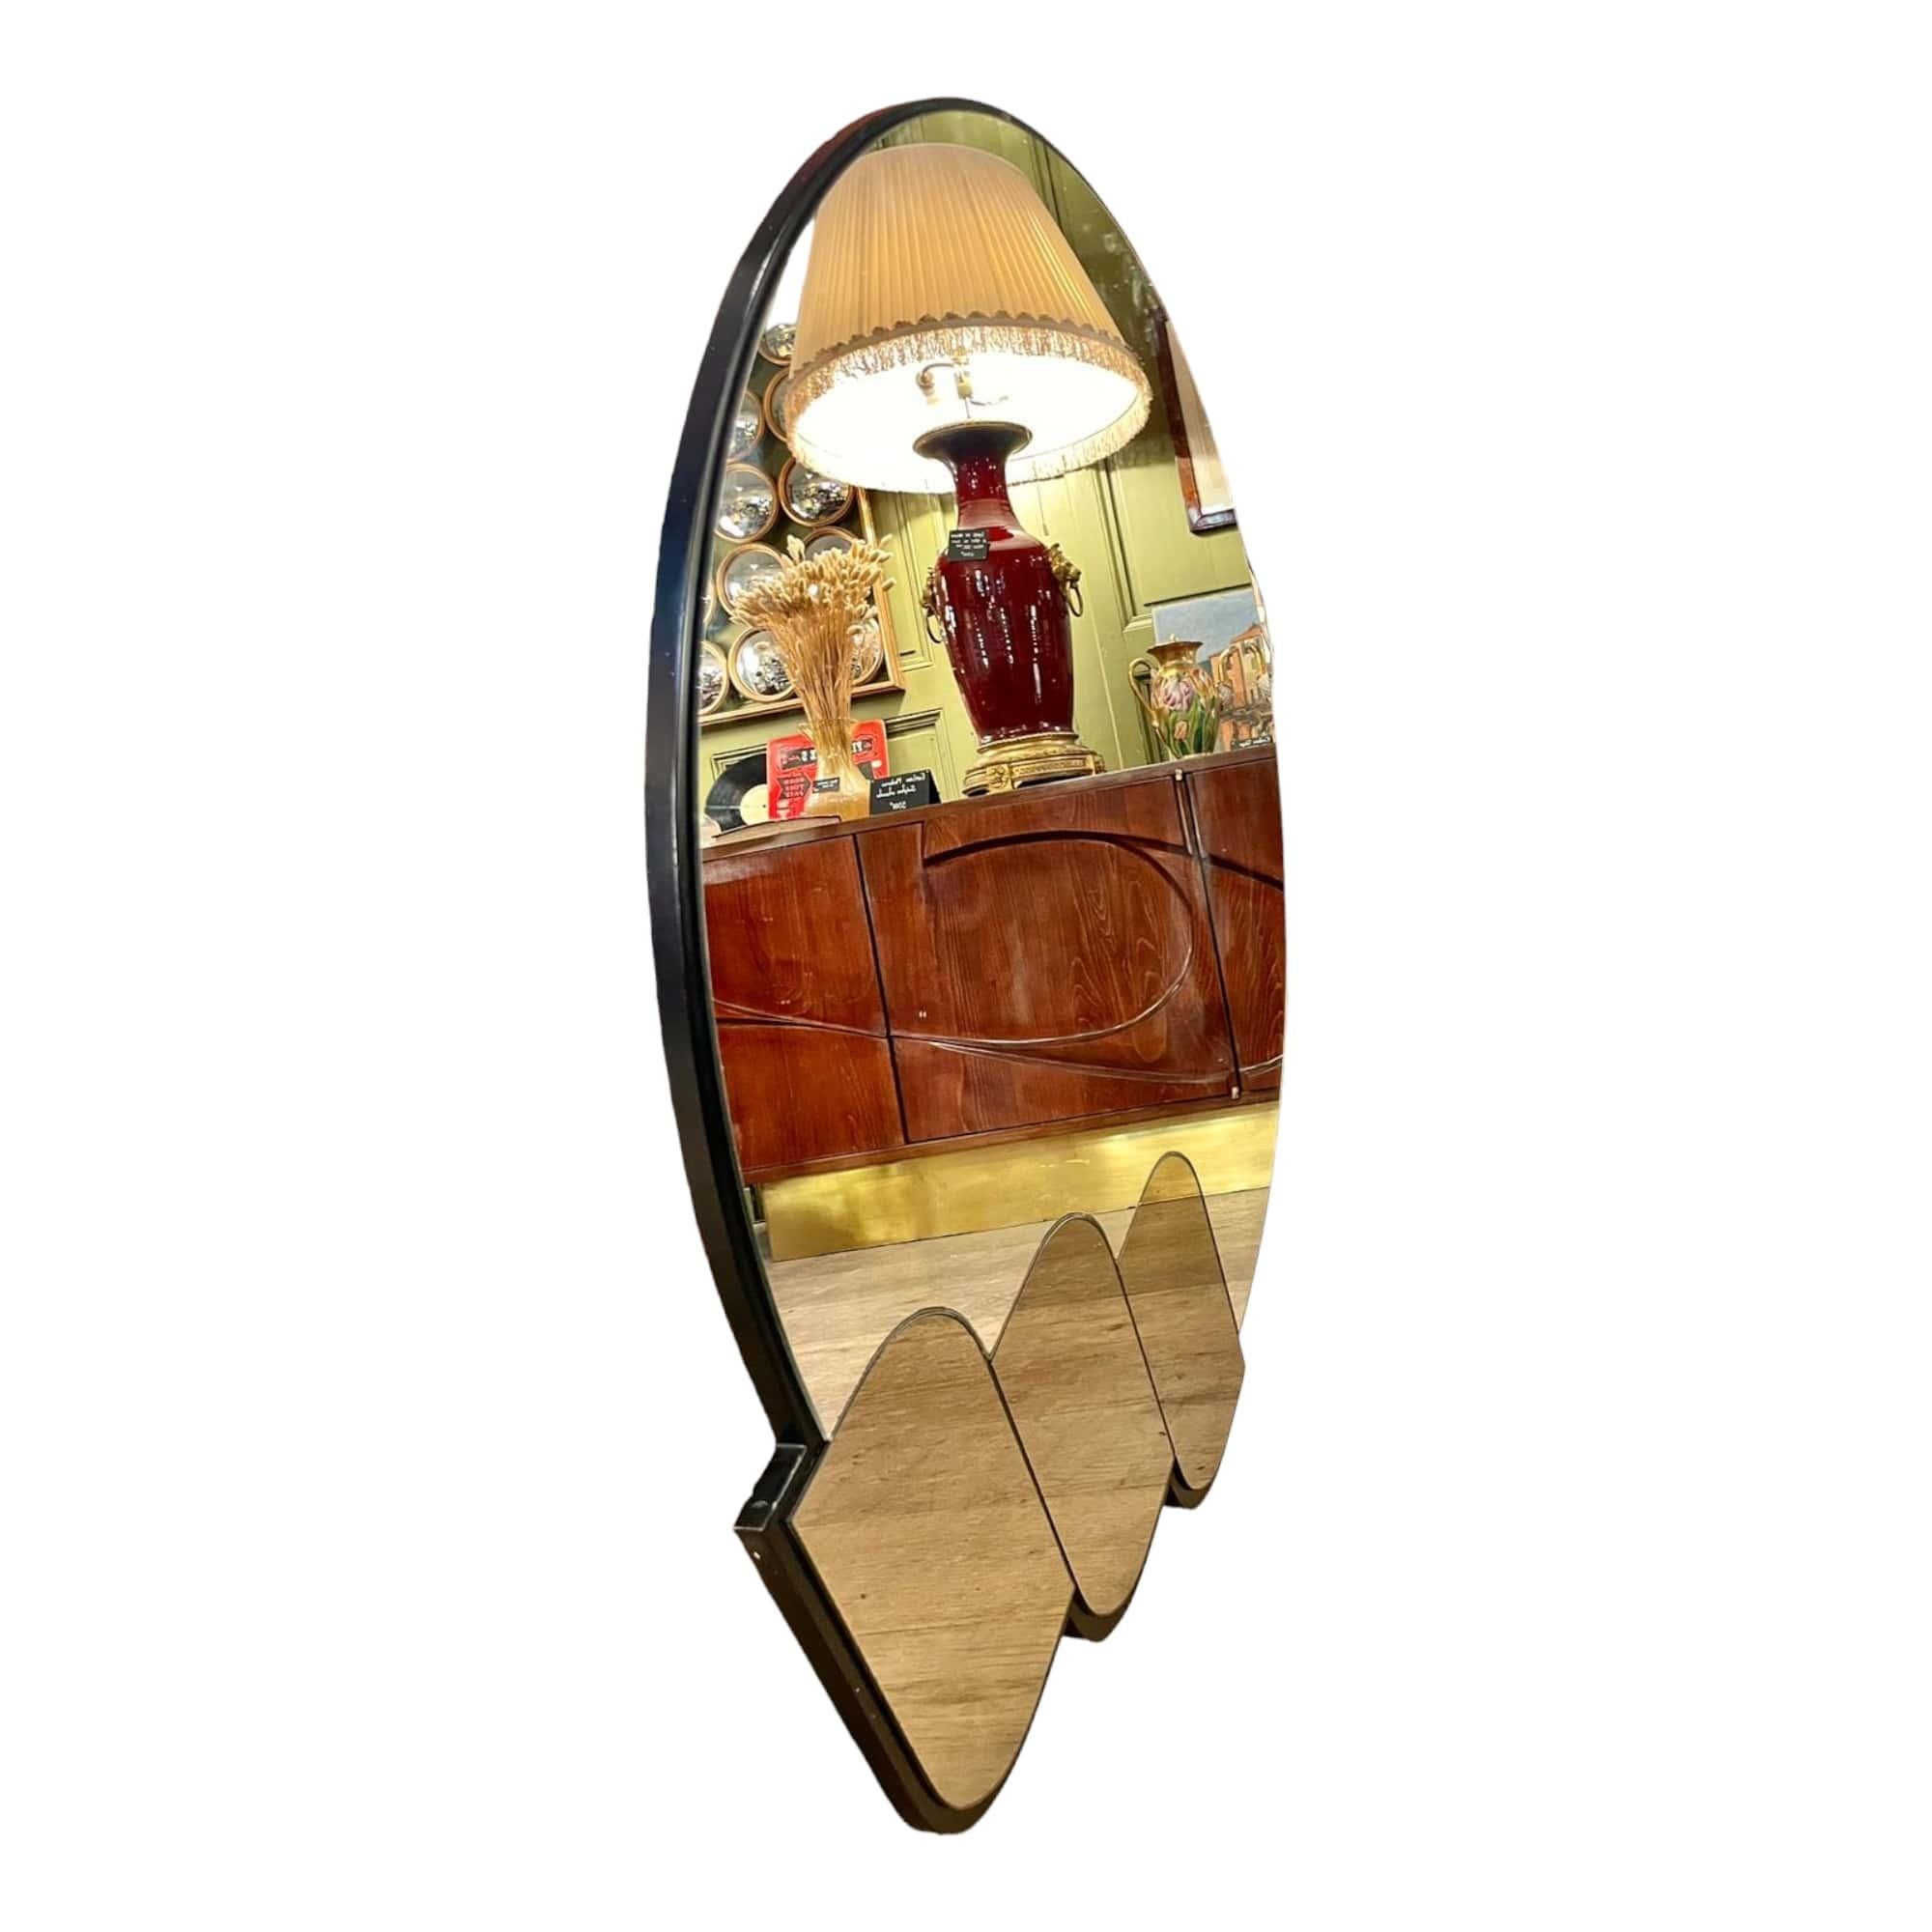 Ce magnifique miroir rétro des années 80 est une véritable pièce d'antiquité française, datant de 1980. Son design unique et son style rétro en font un objet de décoration exceptionnel pour toutes les pièces de la maison. Les détails soignés et la